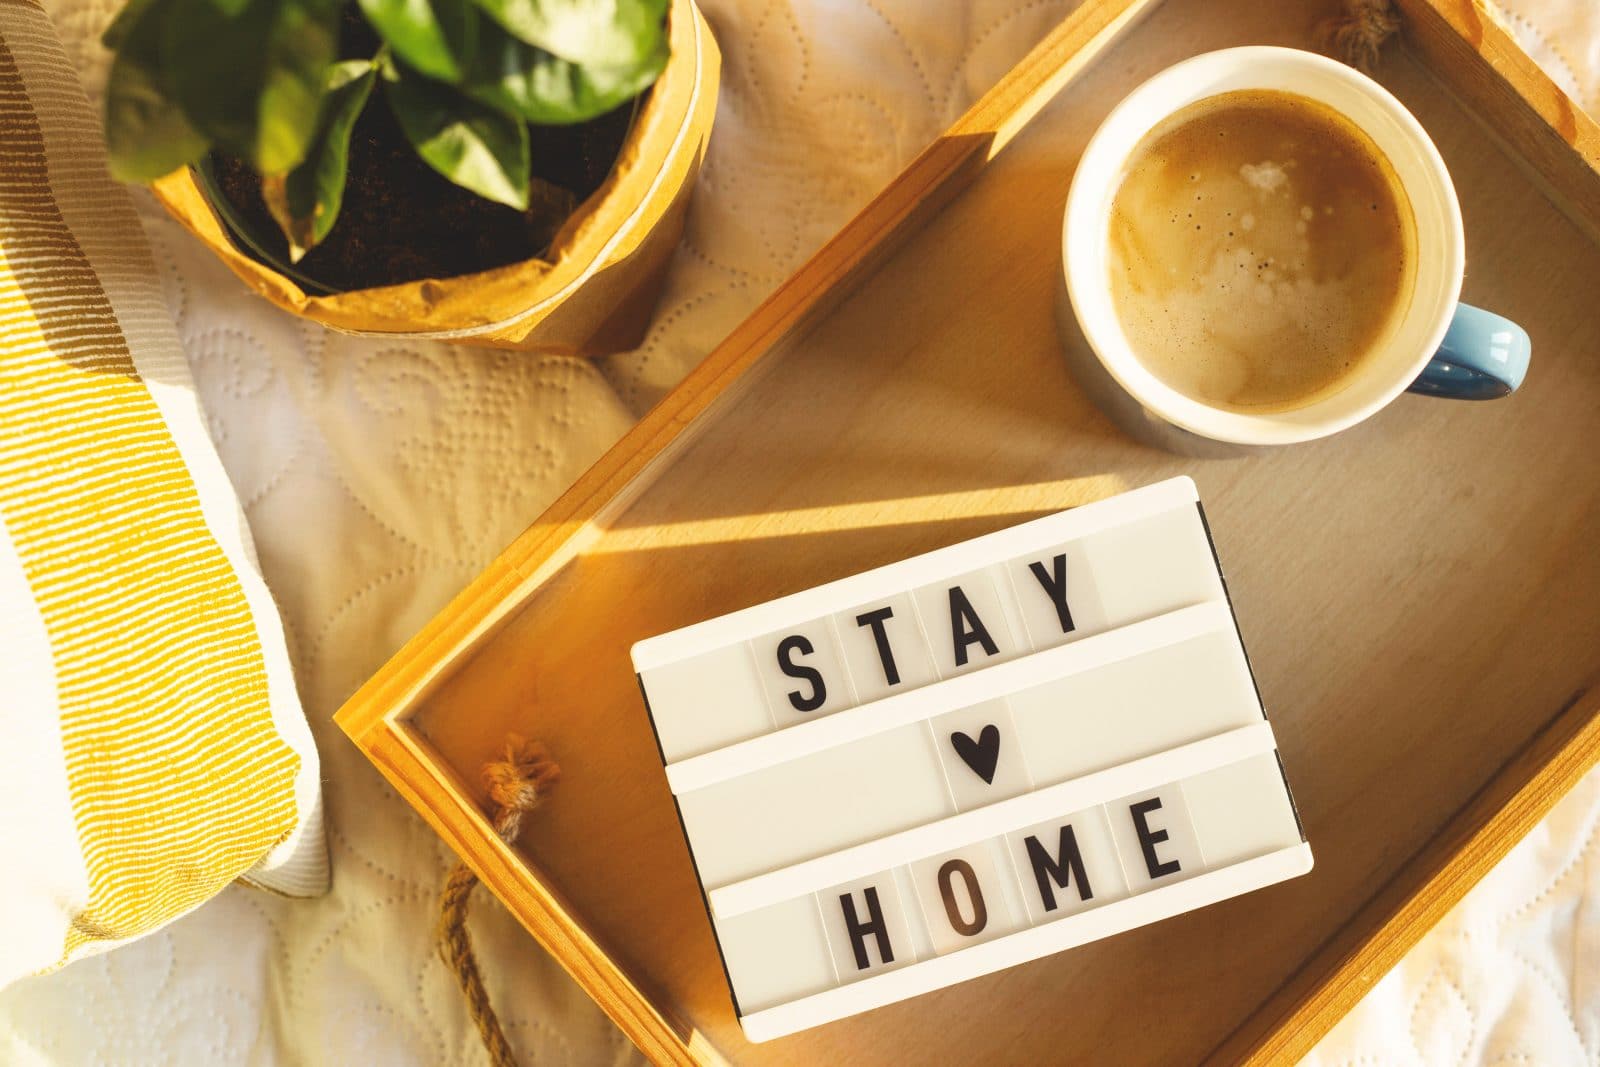 Stay At Home呆在家中有甚麼做？7件事讓你過得充實精彩